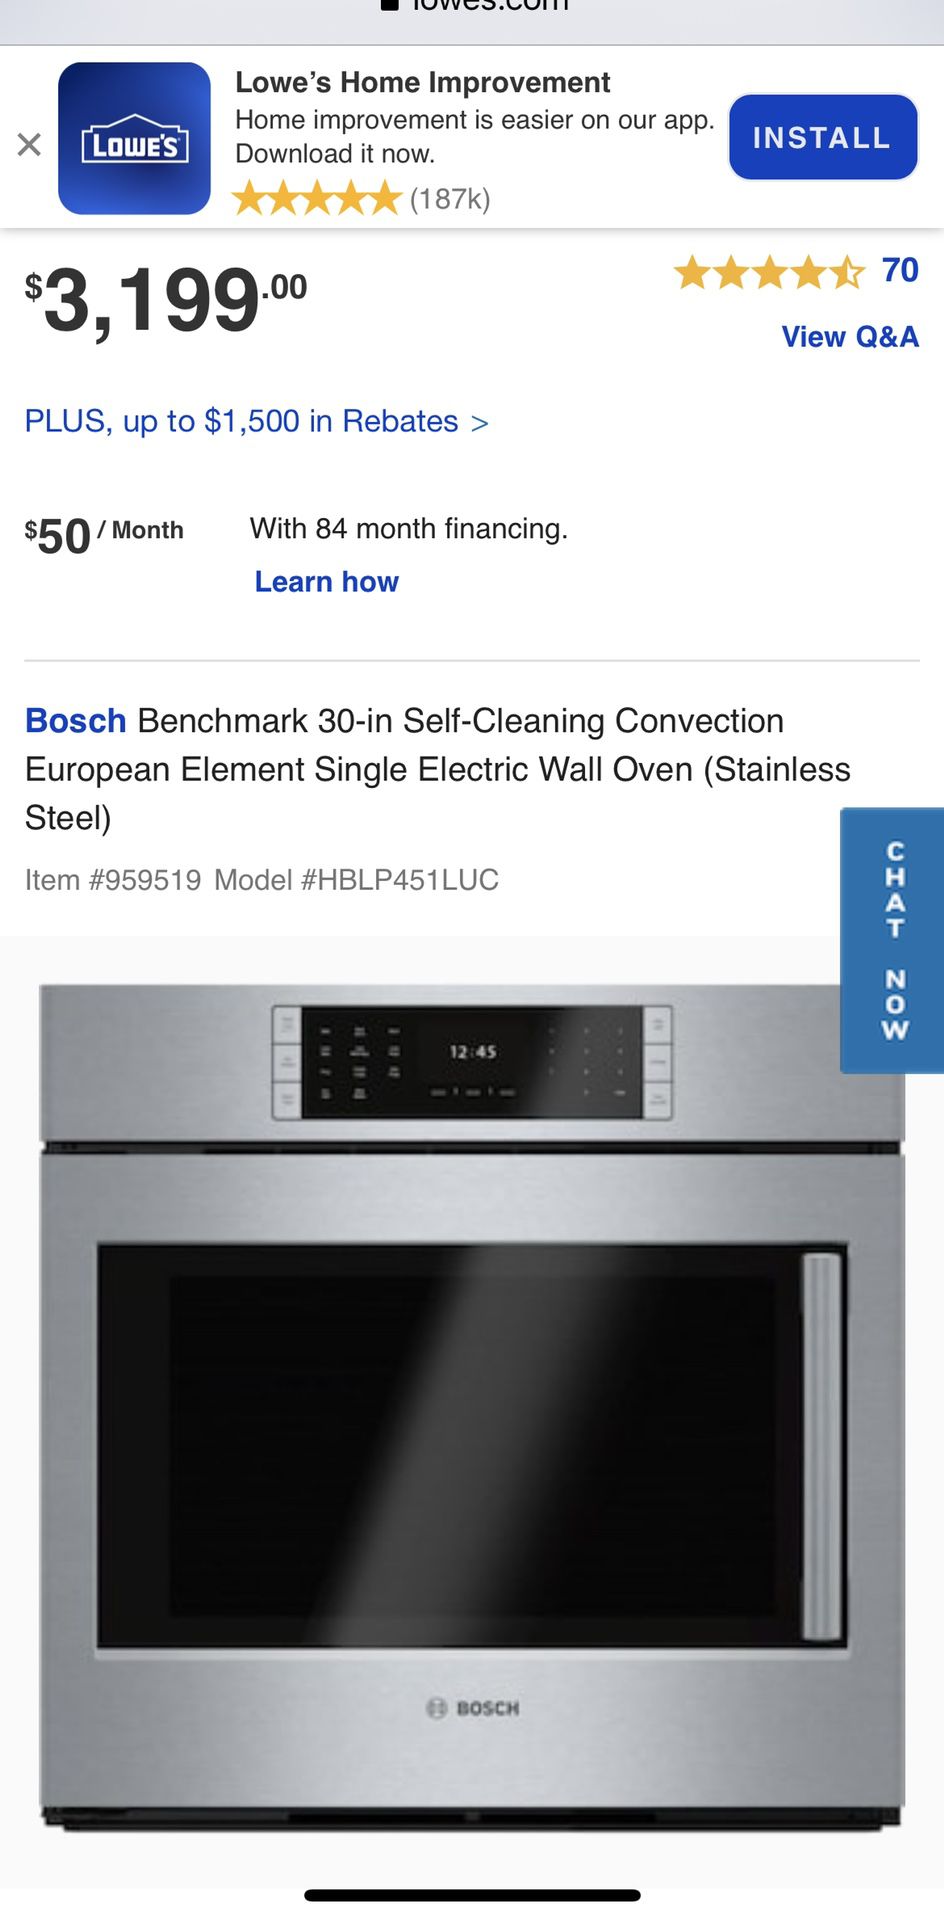 Bosch Appliances and Hood